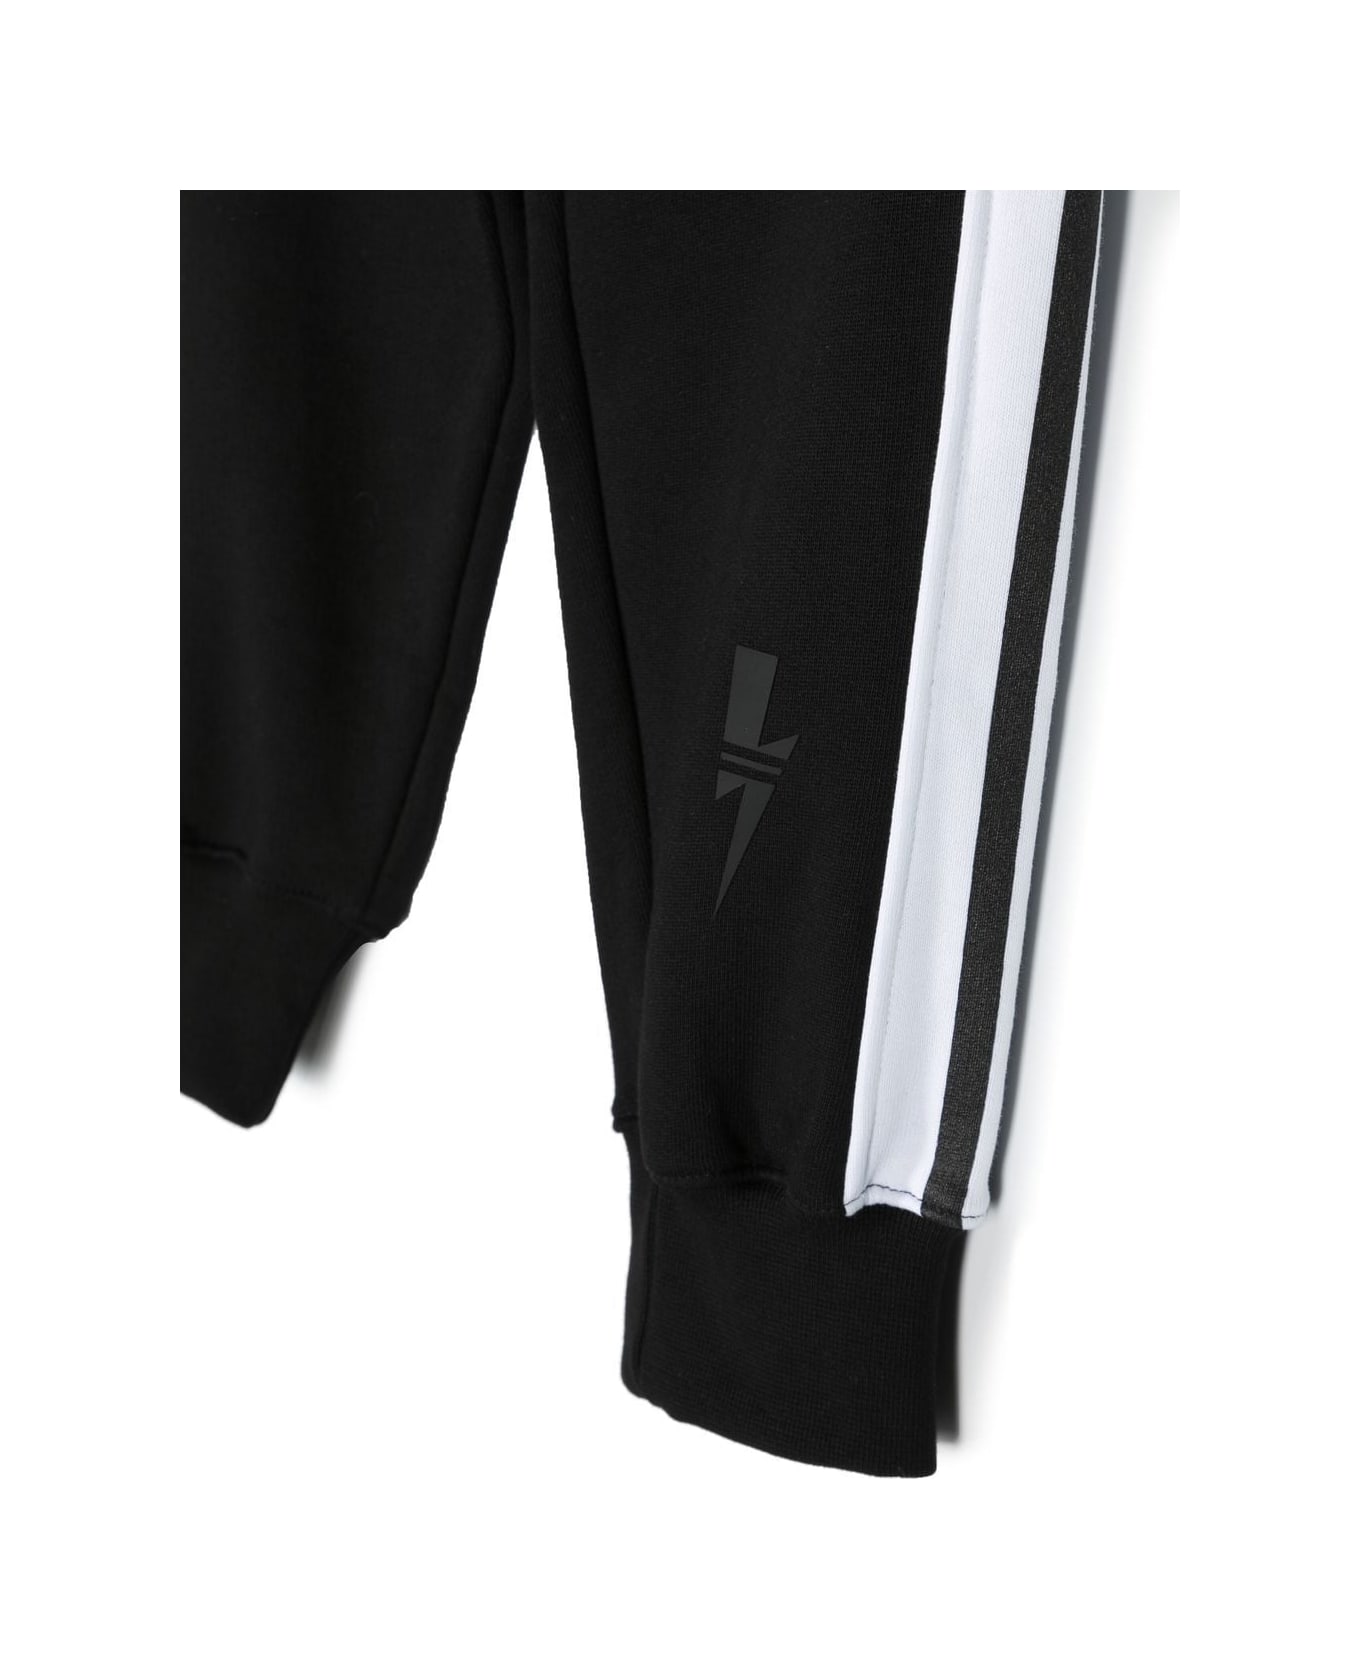 Neil Barrett Sports Trousers With Print - Black